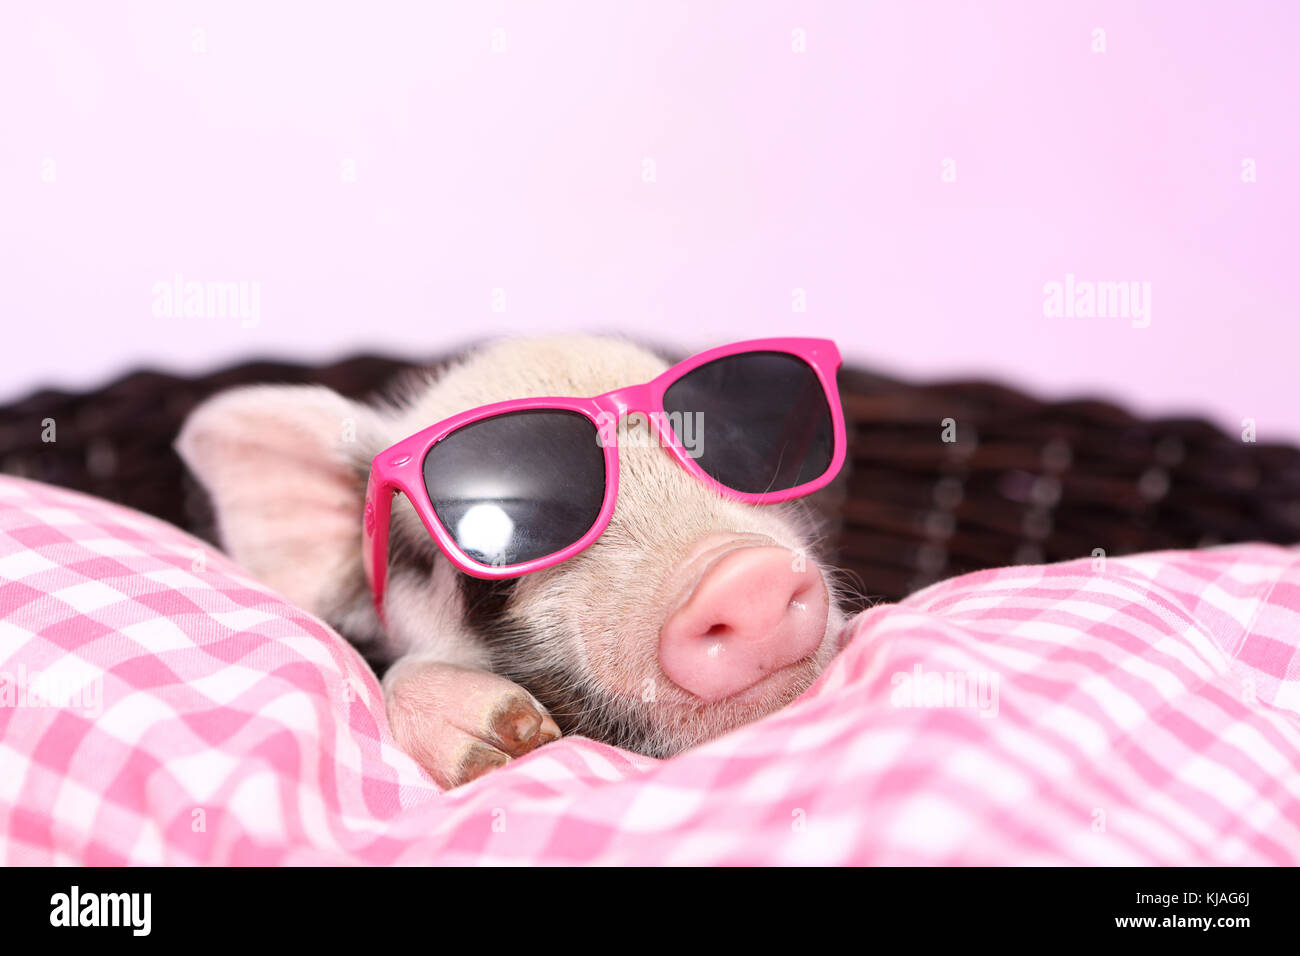 Hausschwein, Turopolje x?. Ferkel schlafen auf rosa-karierten Kissen in einem Korb, Sonnenbrille tragen. Studio Bild gegen einen rosa Hintergrund gesehen. Deutschland Stockfoto